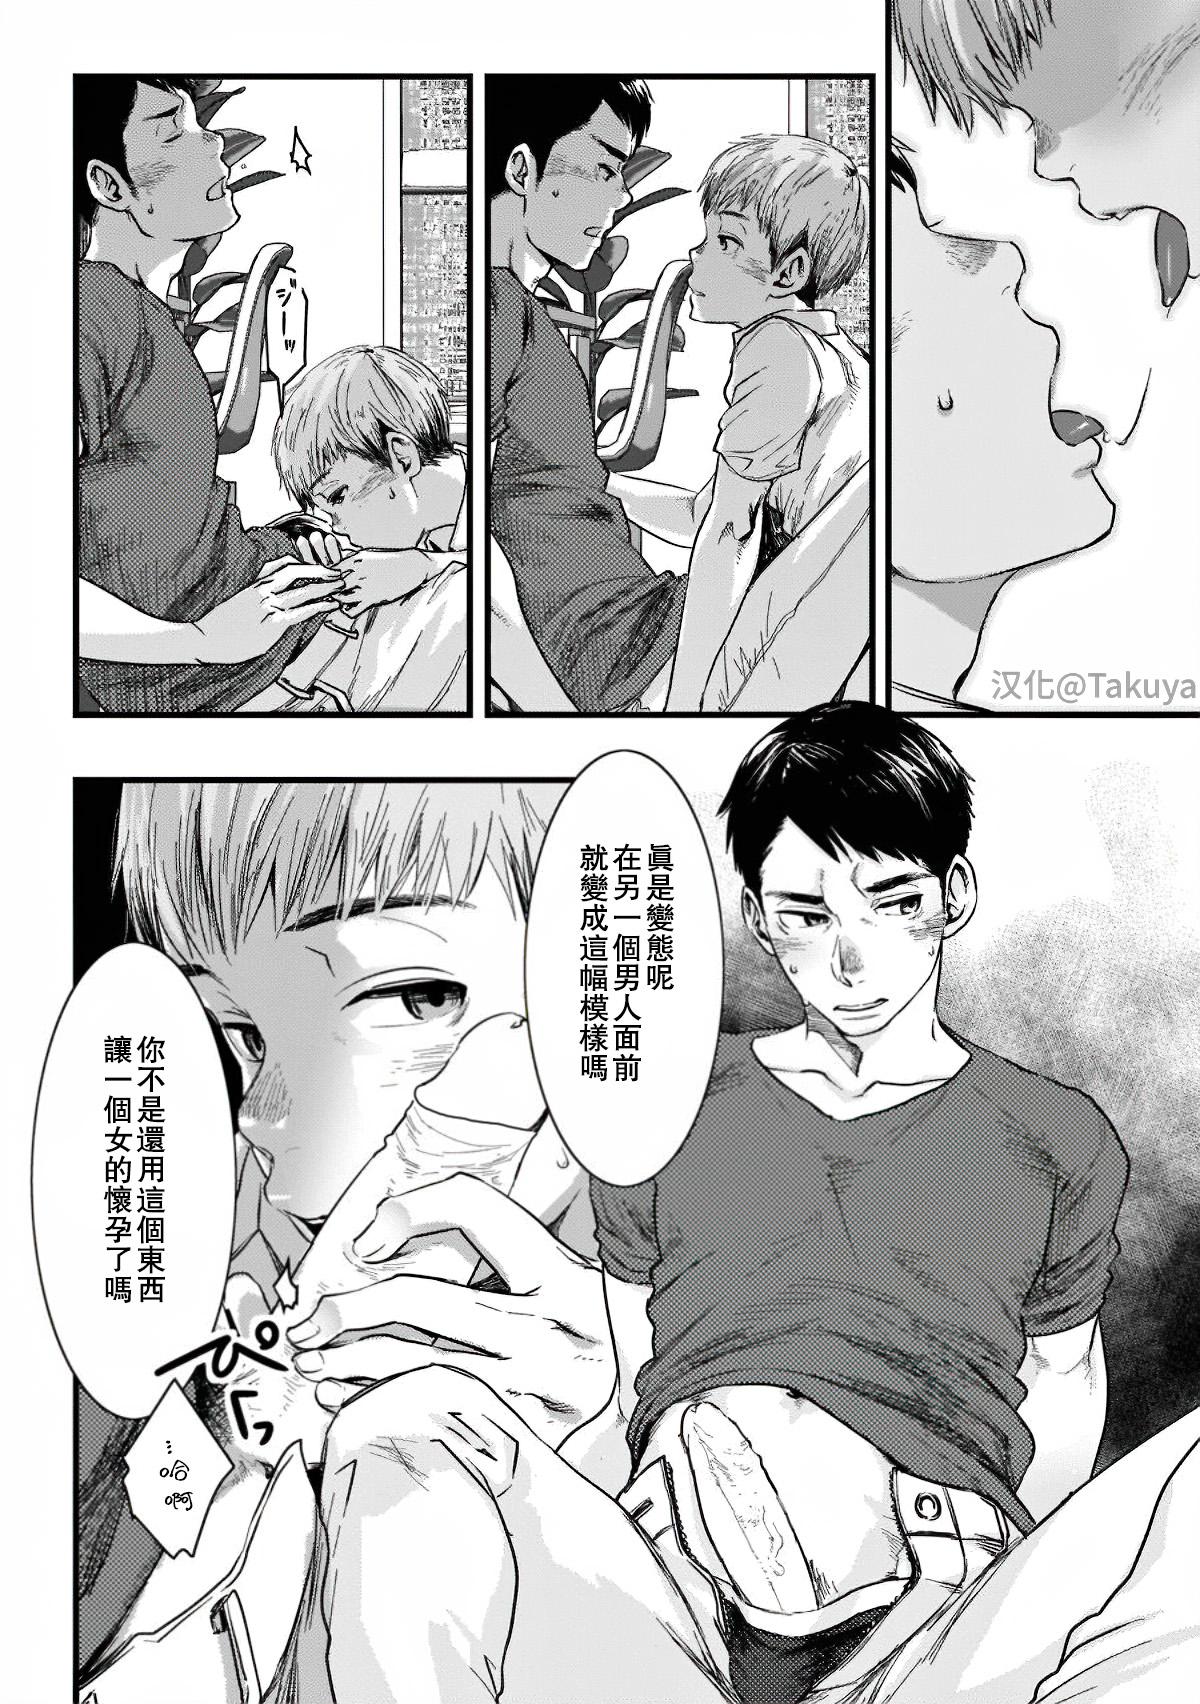 Abuse Itai no wa Kokoro desu | 心之所痛 Vadia - Page 8